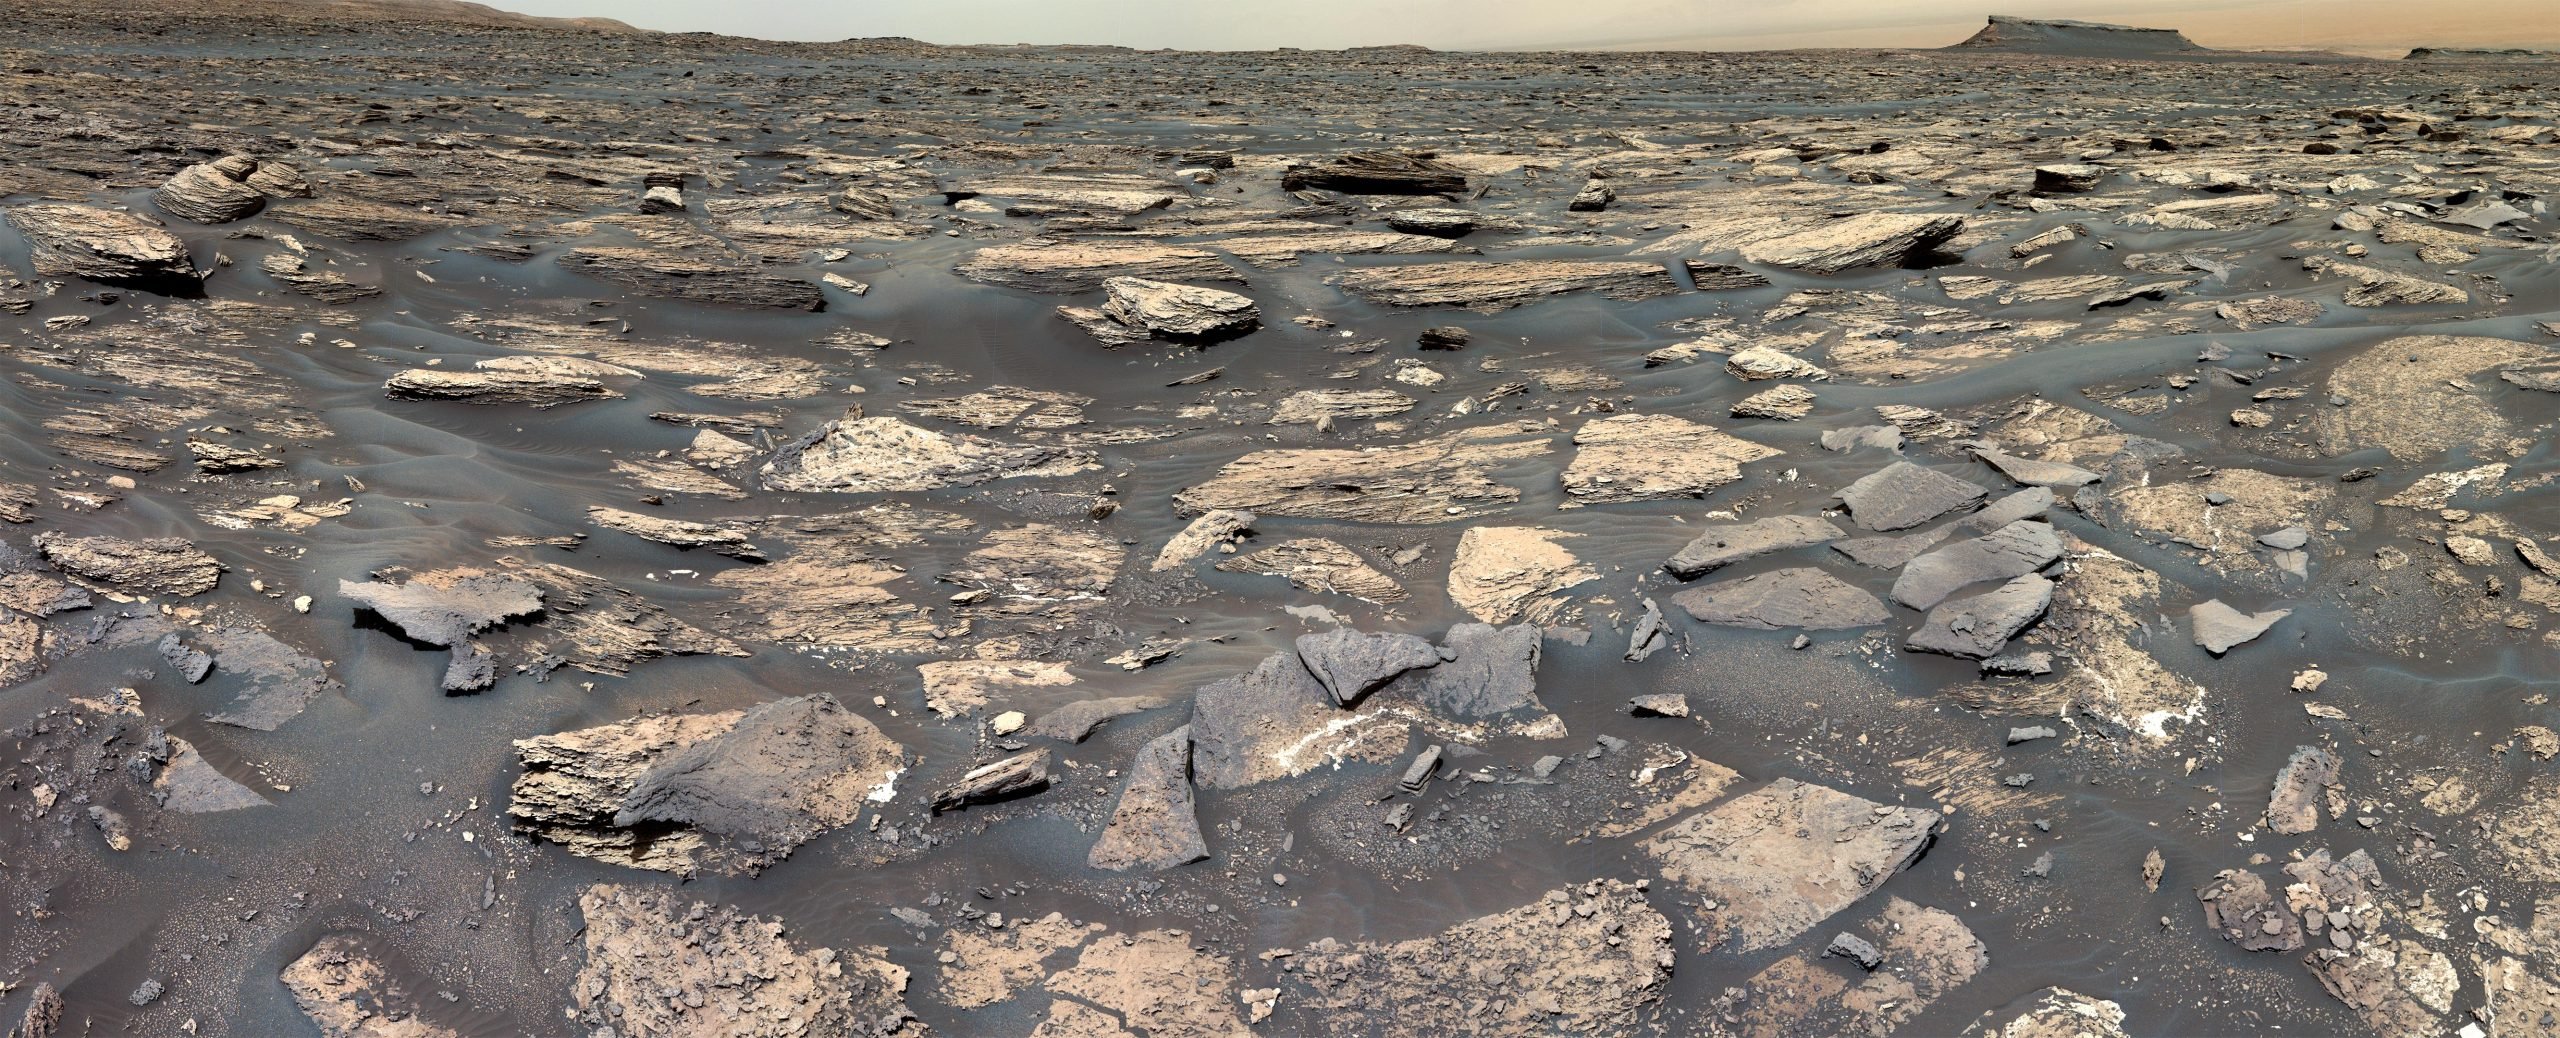 Der NASA-Rover Curiosity enthüllt Anzeichen einer erdähnlichen Umgebung auf dem alten Mars